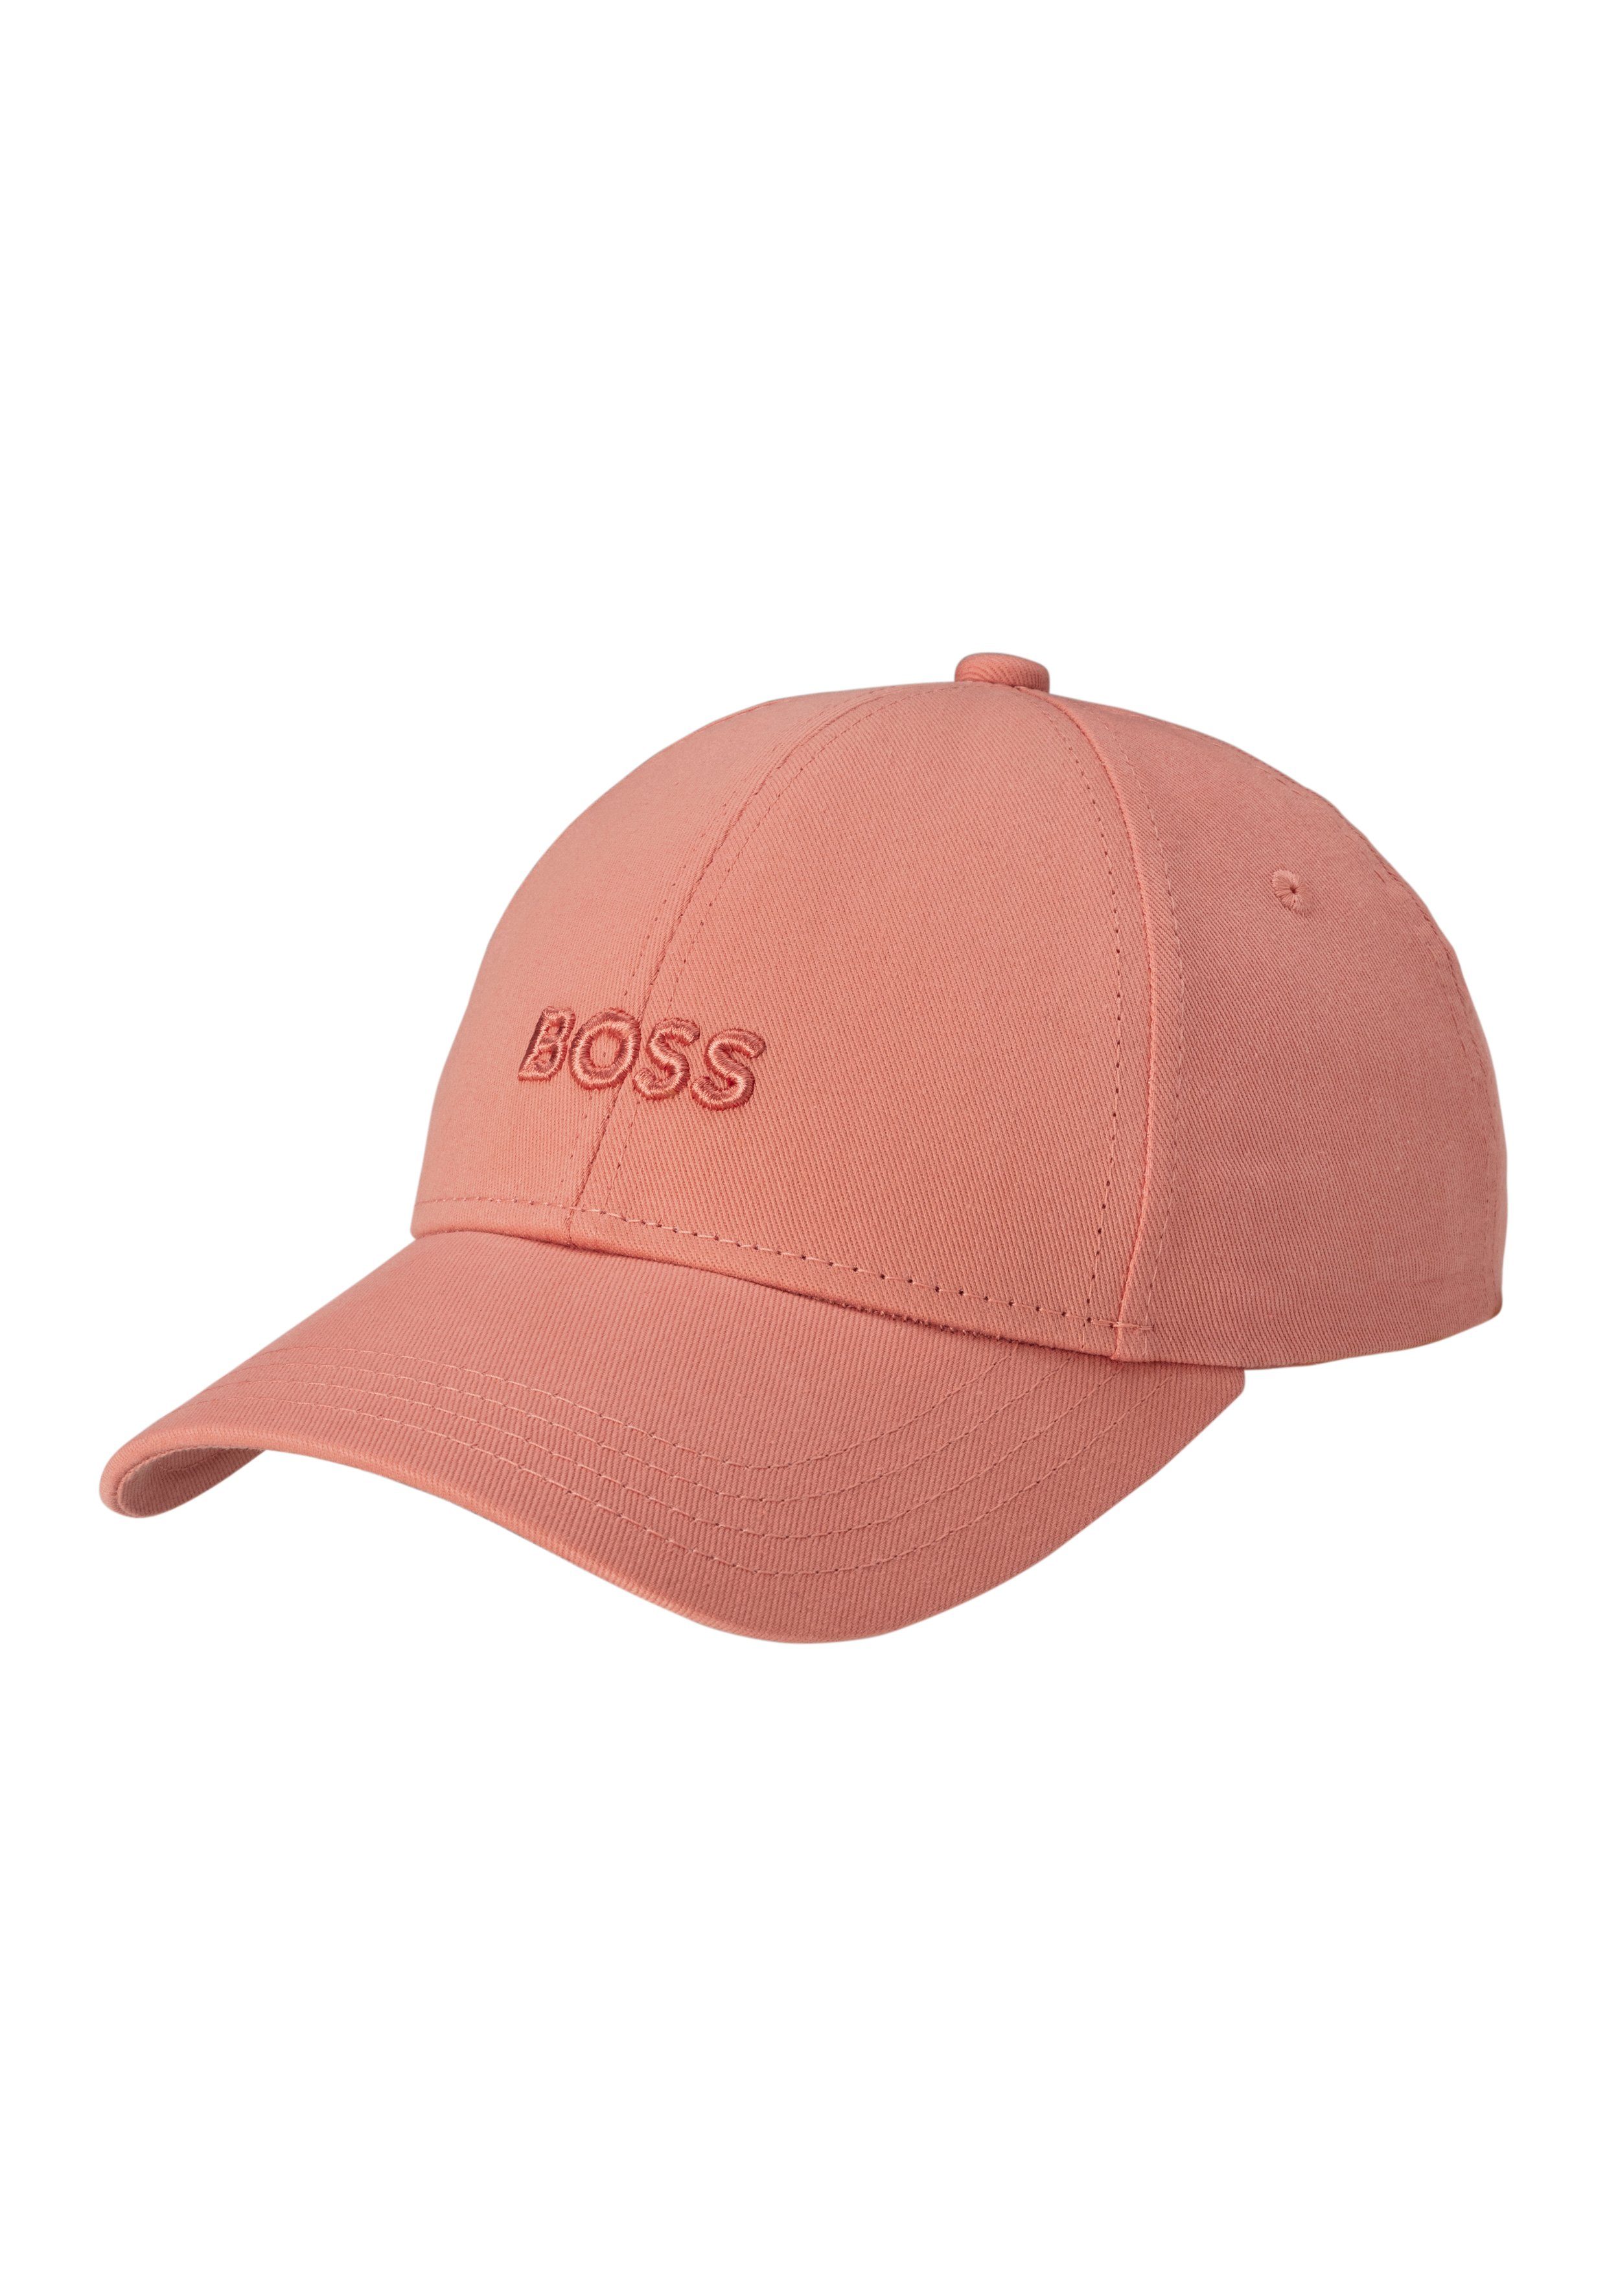 aufgesticktem Ari BOSS Baseball Cap mit BOSS Schriftzug Light/Pastel_Orange835